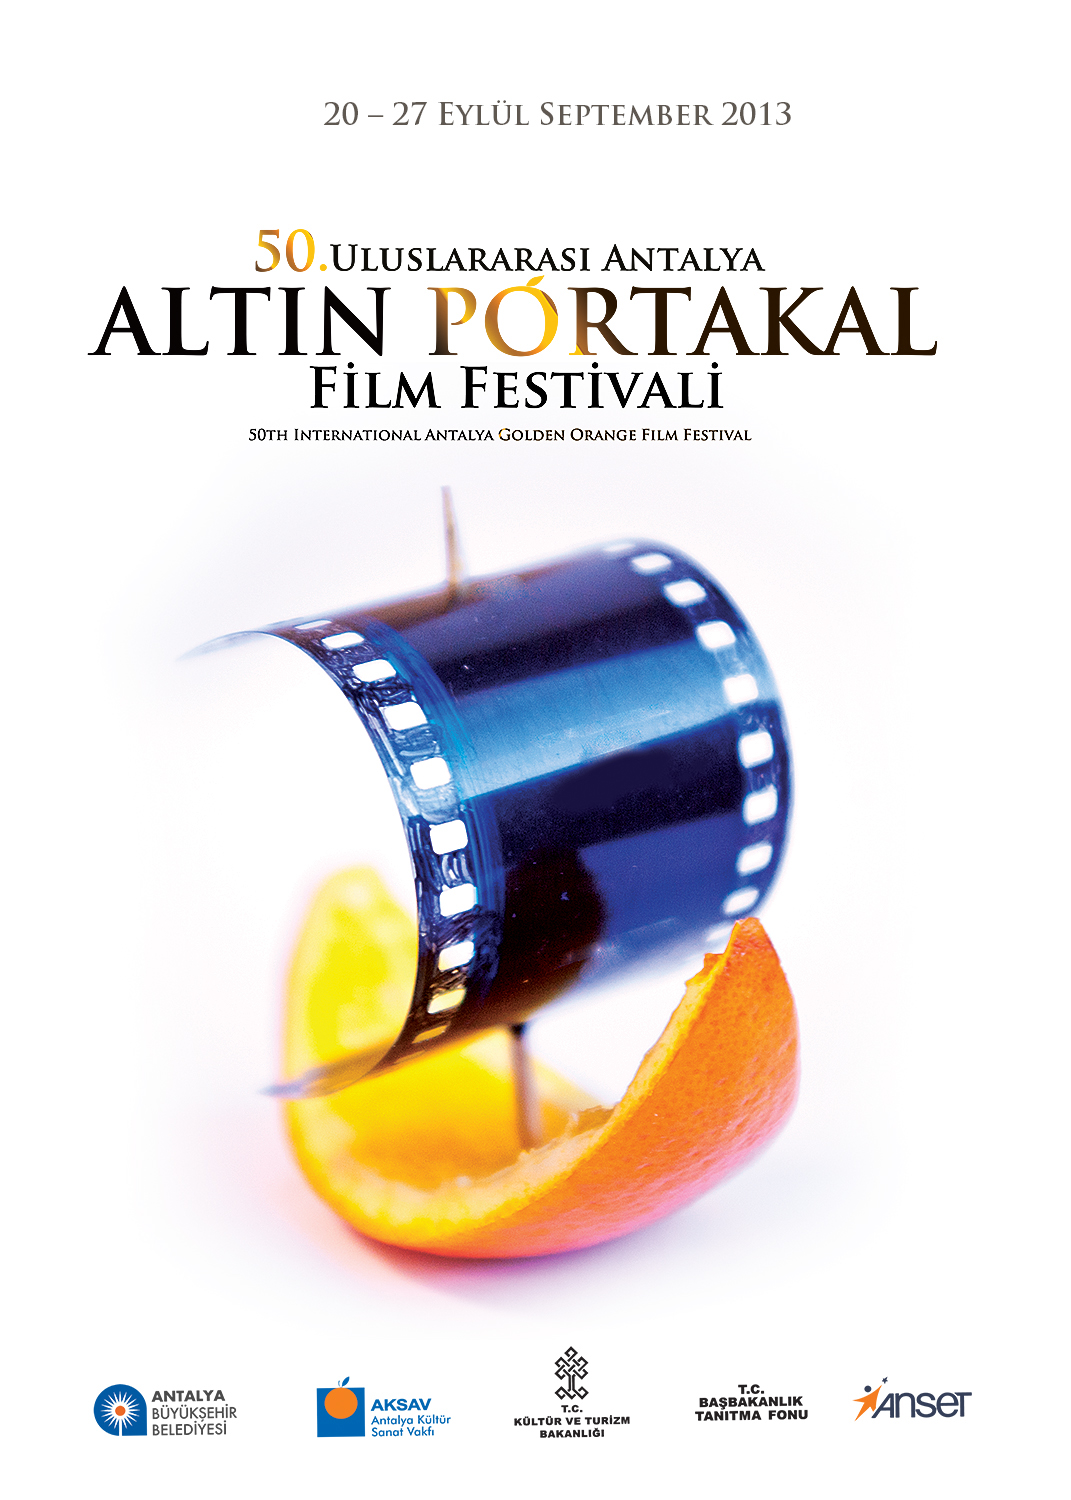 altın portakal altın portakal antalya antalya altın portakal film festival festival golden orange golden orange film international film international festival